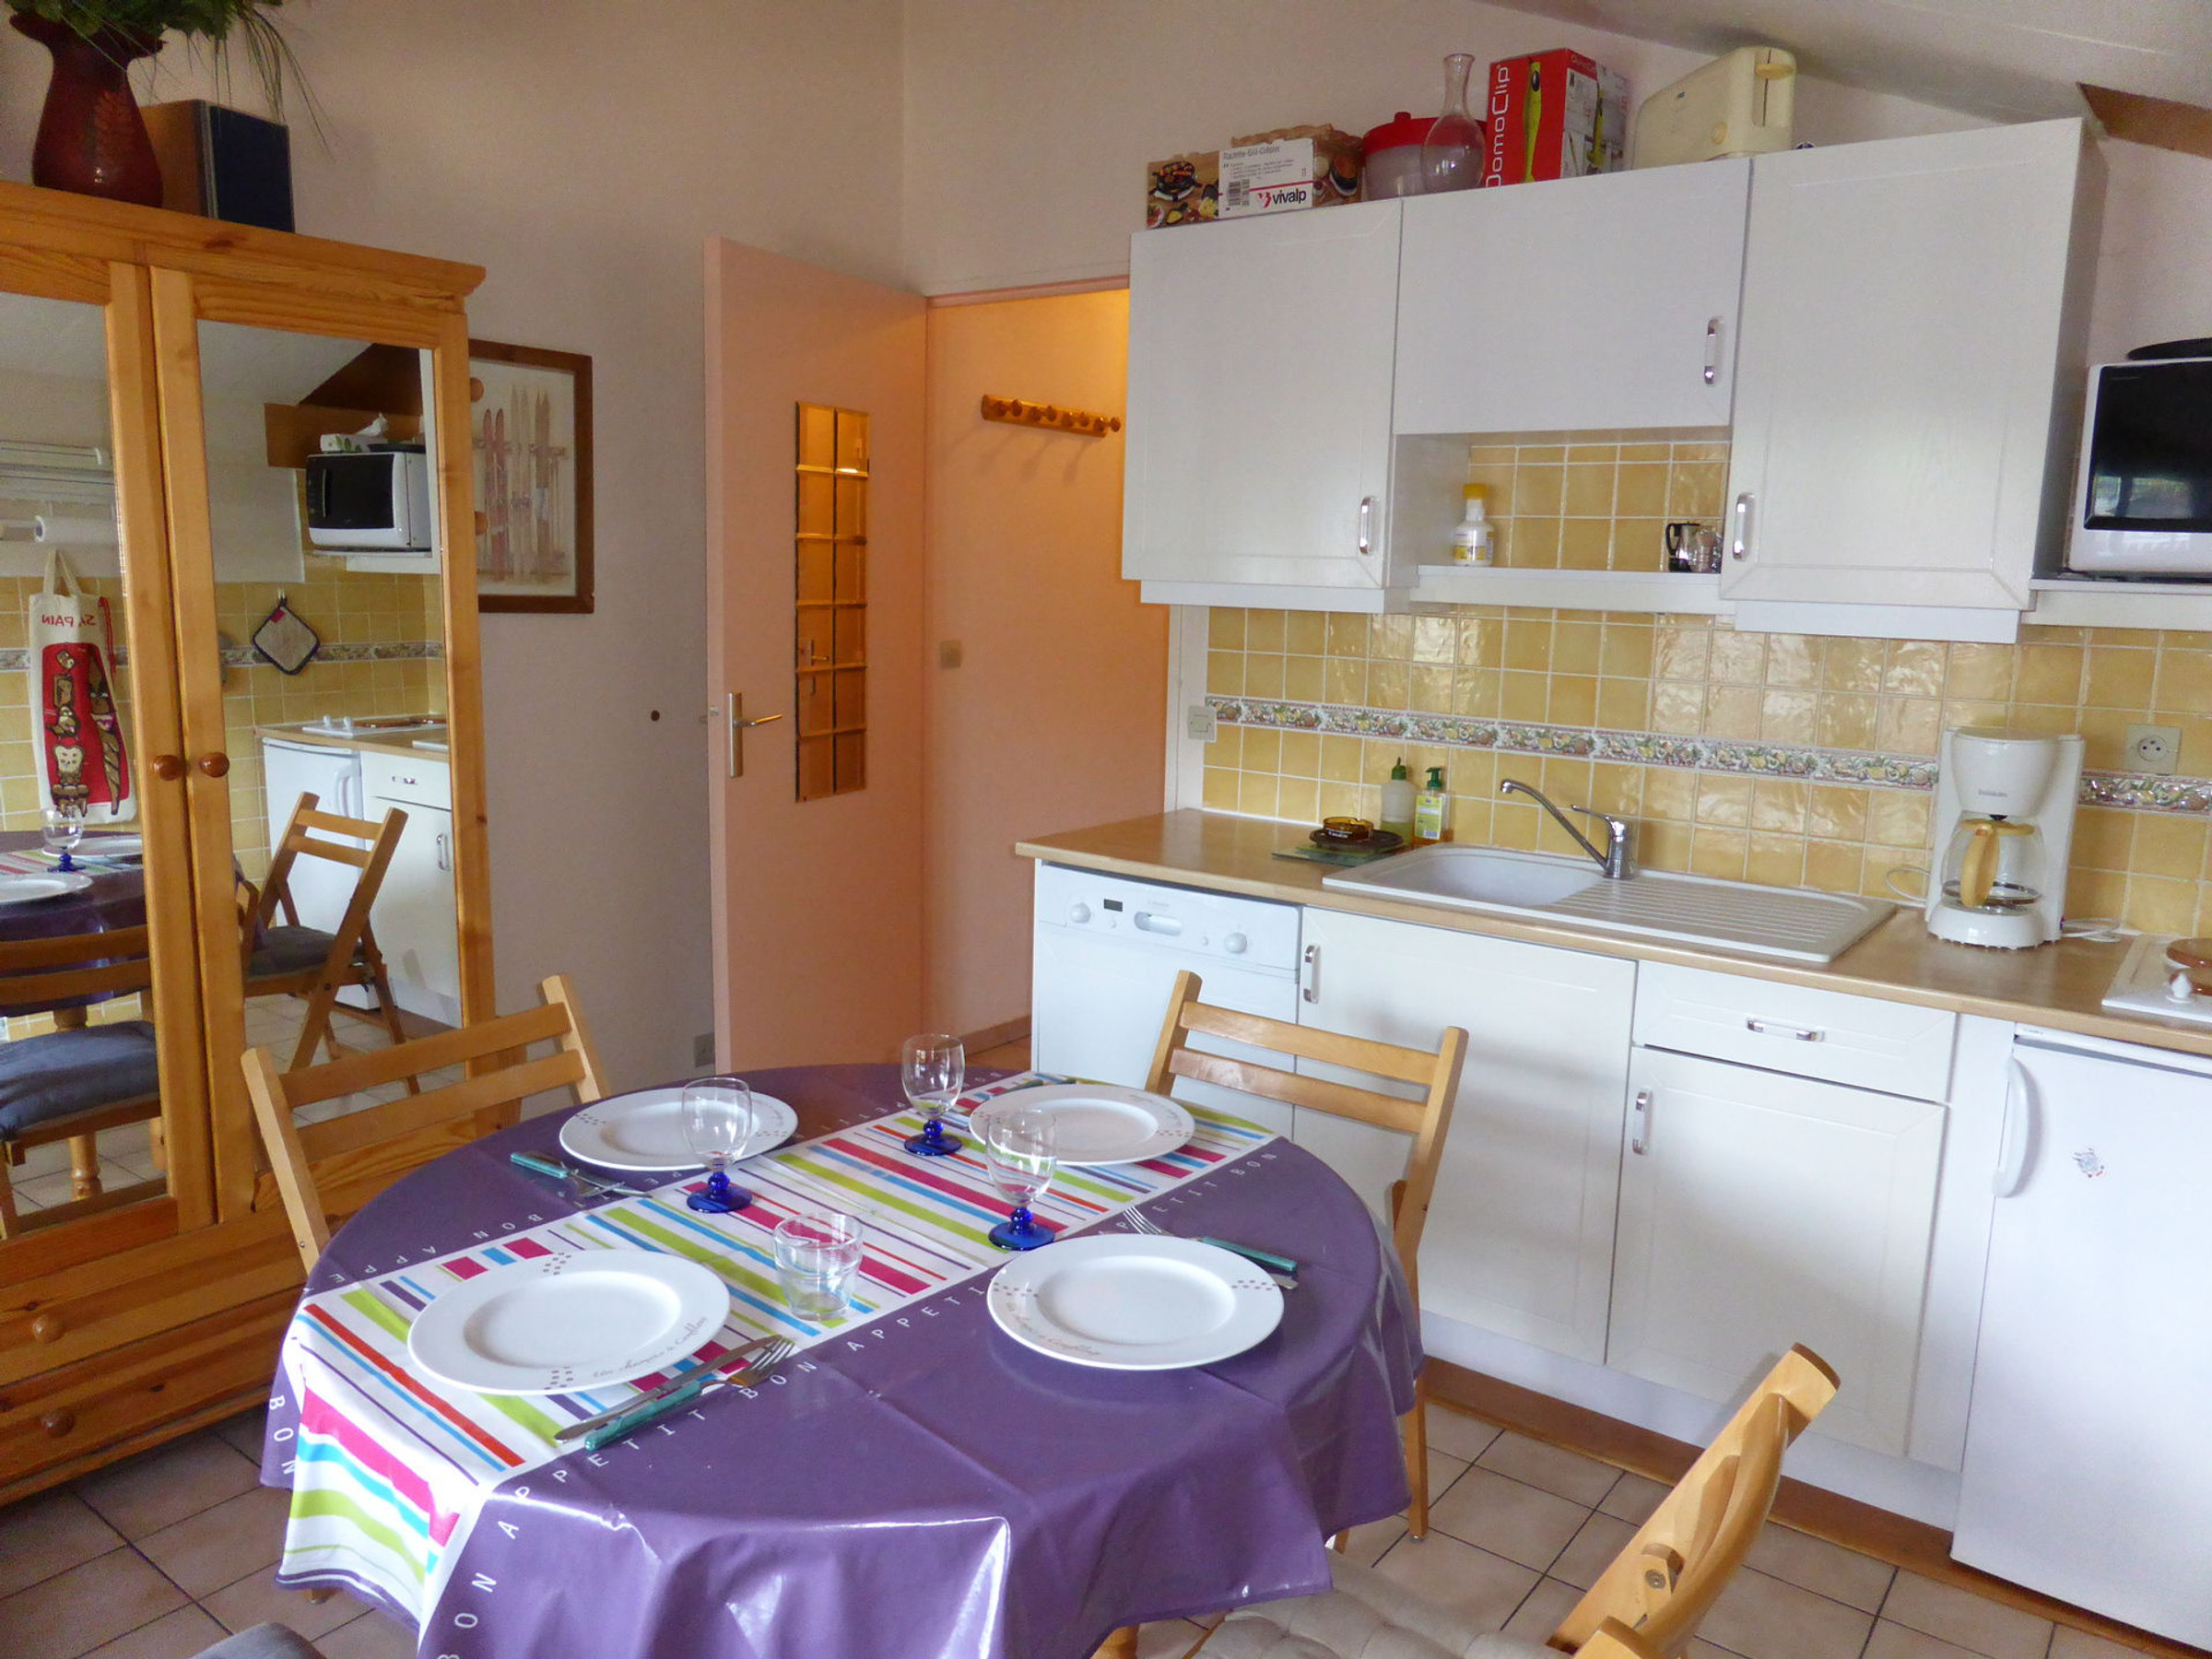 Appartement 2 pièces pour 5 personnes situé au centre du village de Combloux